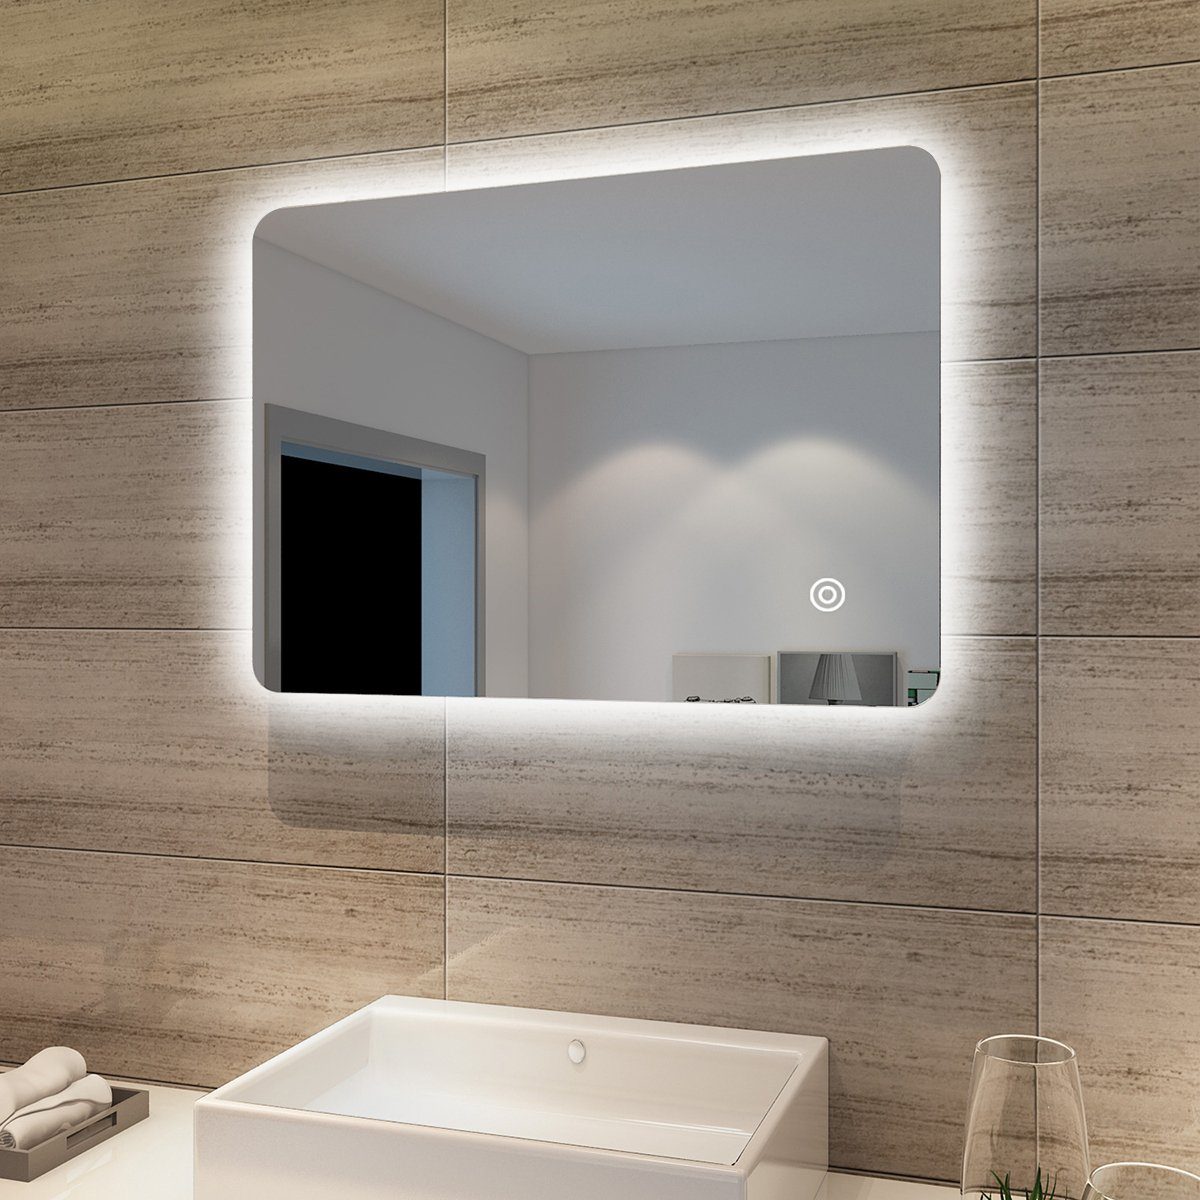 SONNI Badspiegel Badspiegel Lichtspiegel LED Spiegel Wandspiegel mit Touch-Schalter, 70 x 50cm kaltweiß IP44 energiesparend